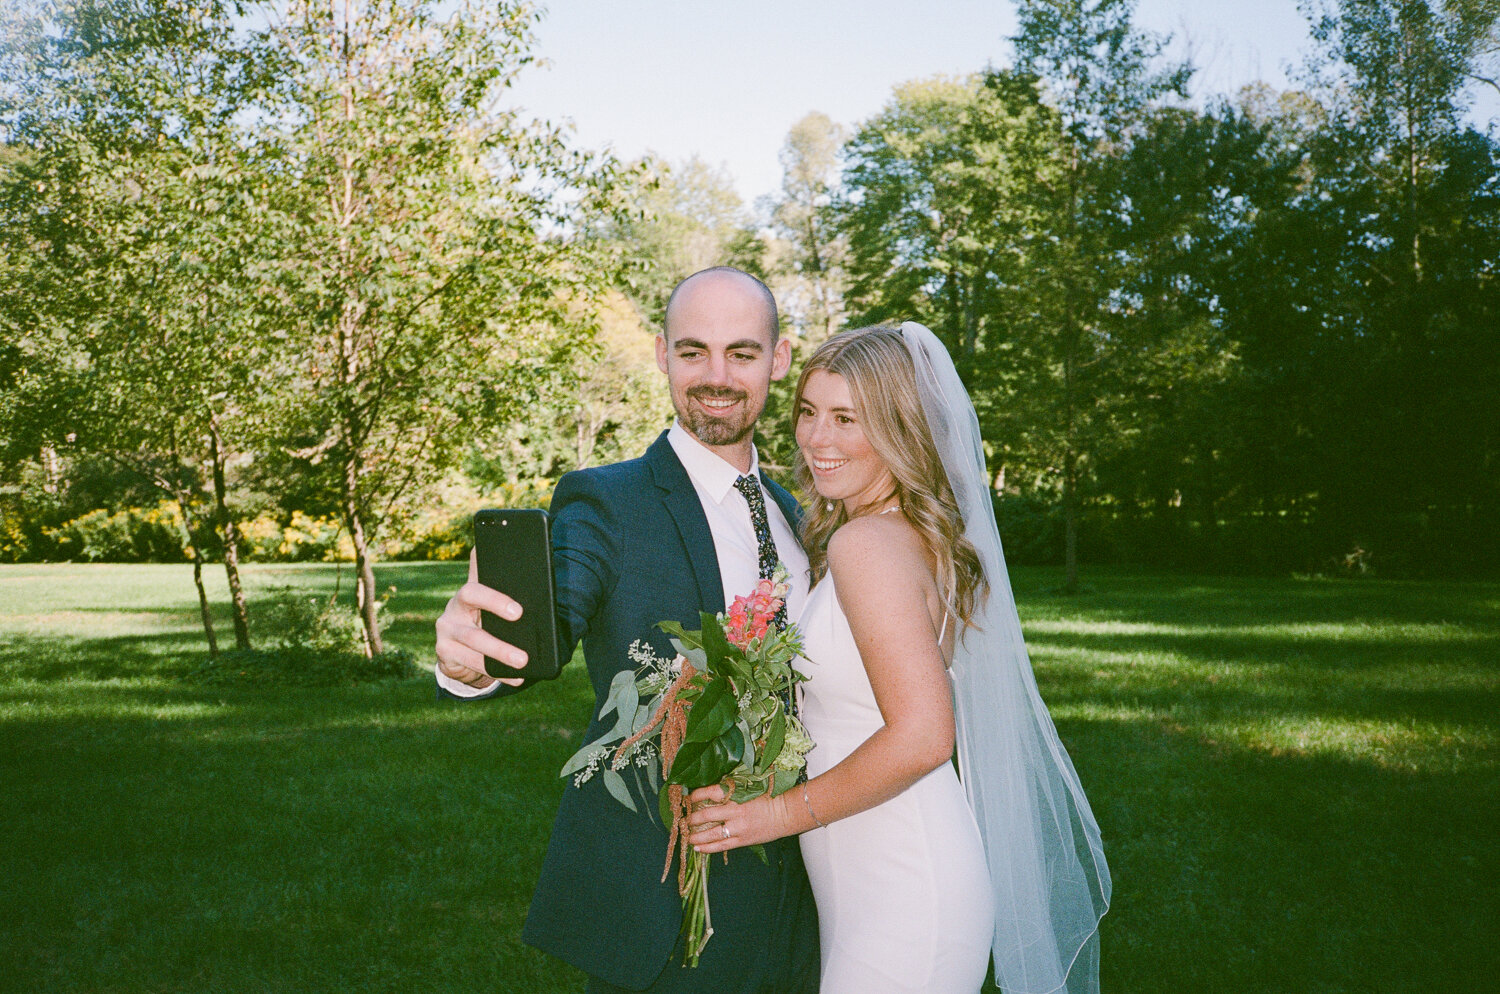 Analog-Film-Micro-Wedding-Photos-Inspiration-Backyard-Toronto-Ontario-58.JPG